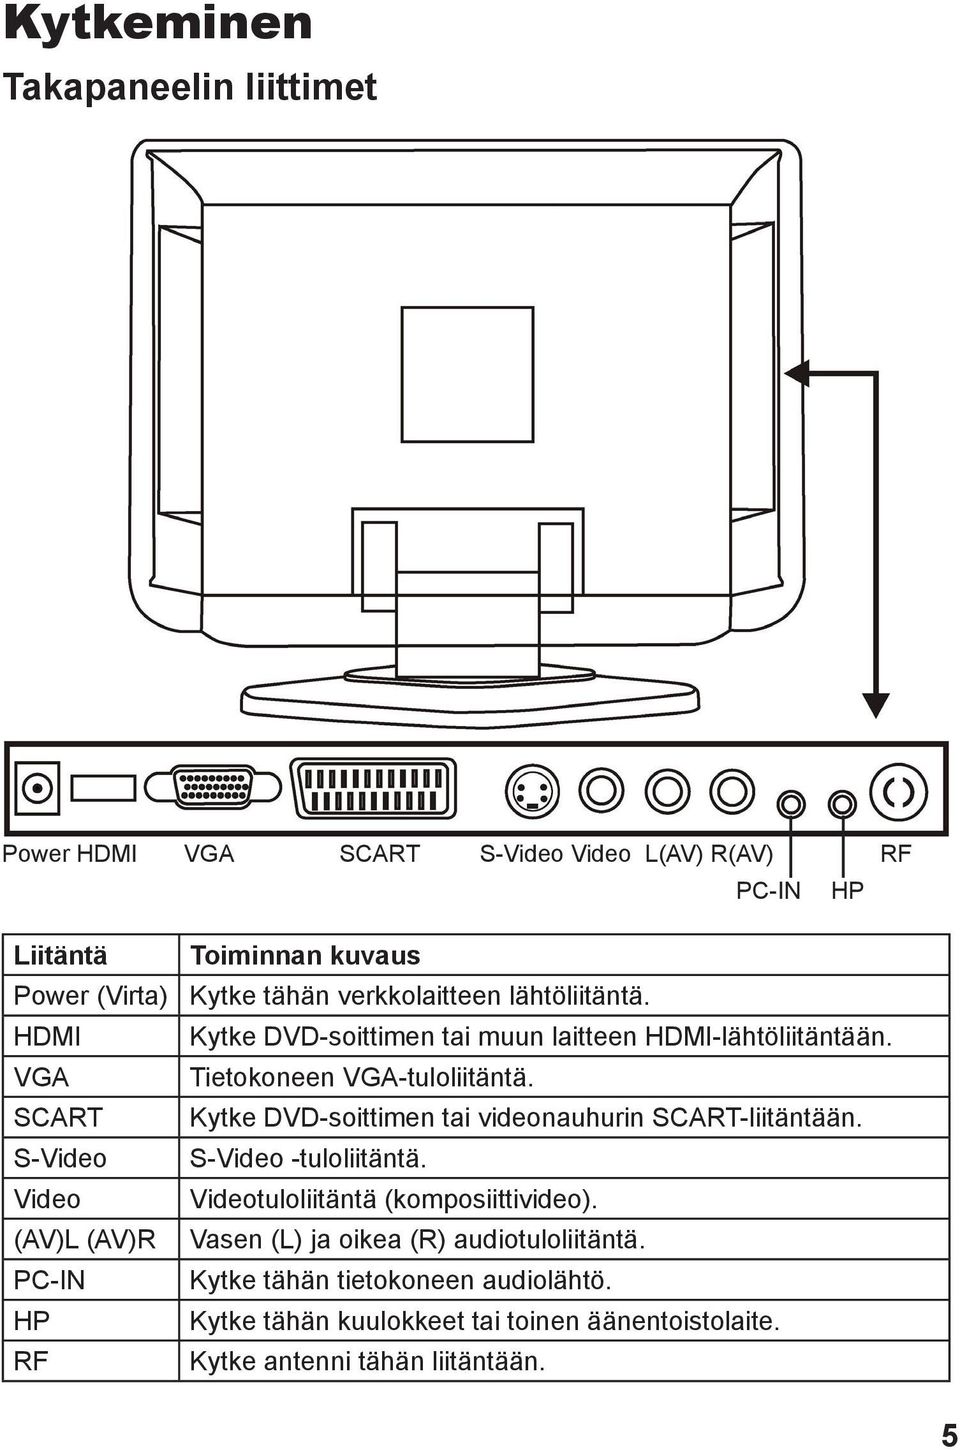 Tietokoneen VGA-tuloliitäntä. Kytke DVD-soittimen tai videonauhurin SCART-liitäntään. S-Video -tuloliitäntä. Videotuloliitäntä (komposiittivideo).